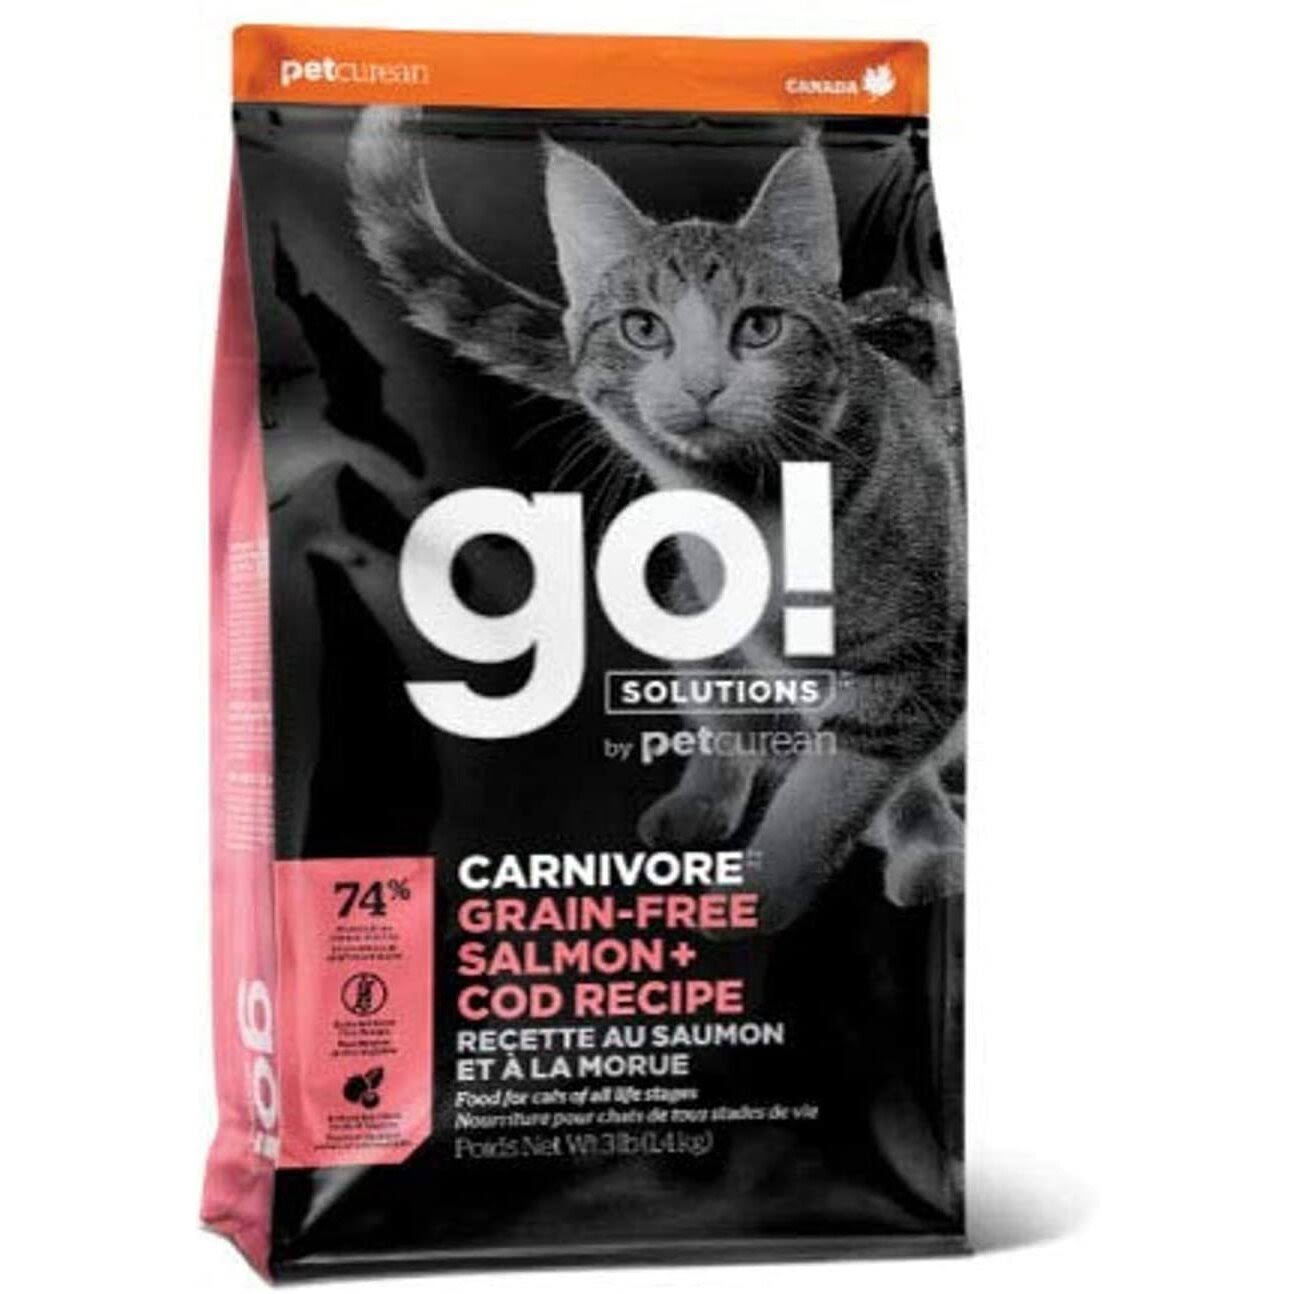 PetCurean go! Solutions, Carnivore Grain-Free Salmon + Cod Recipe 3lb Bag